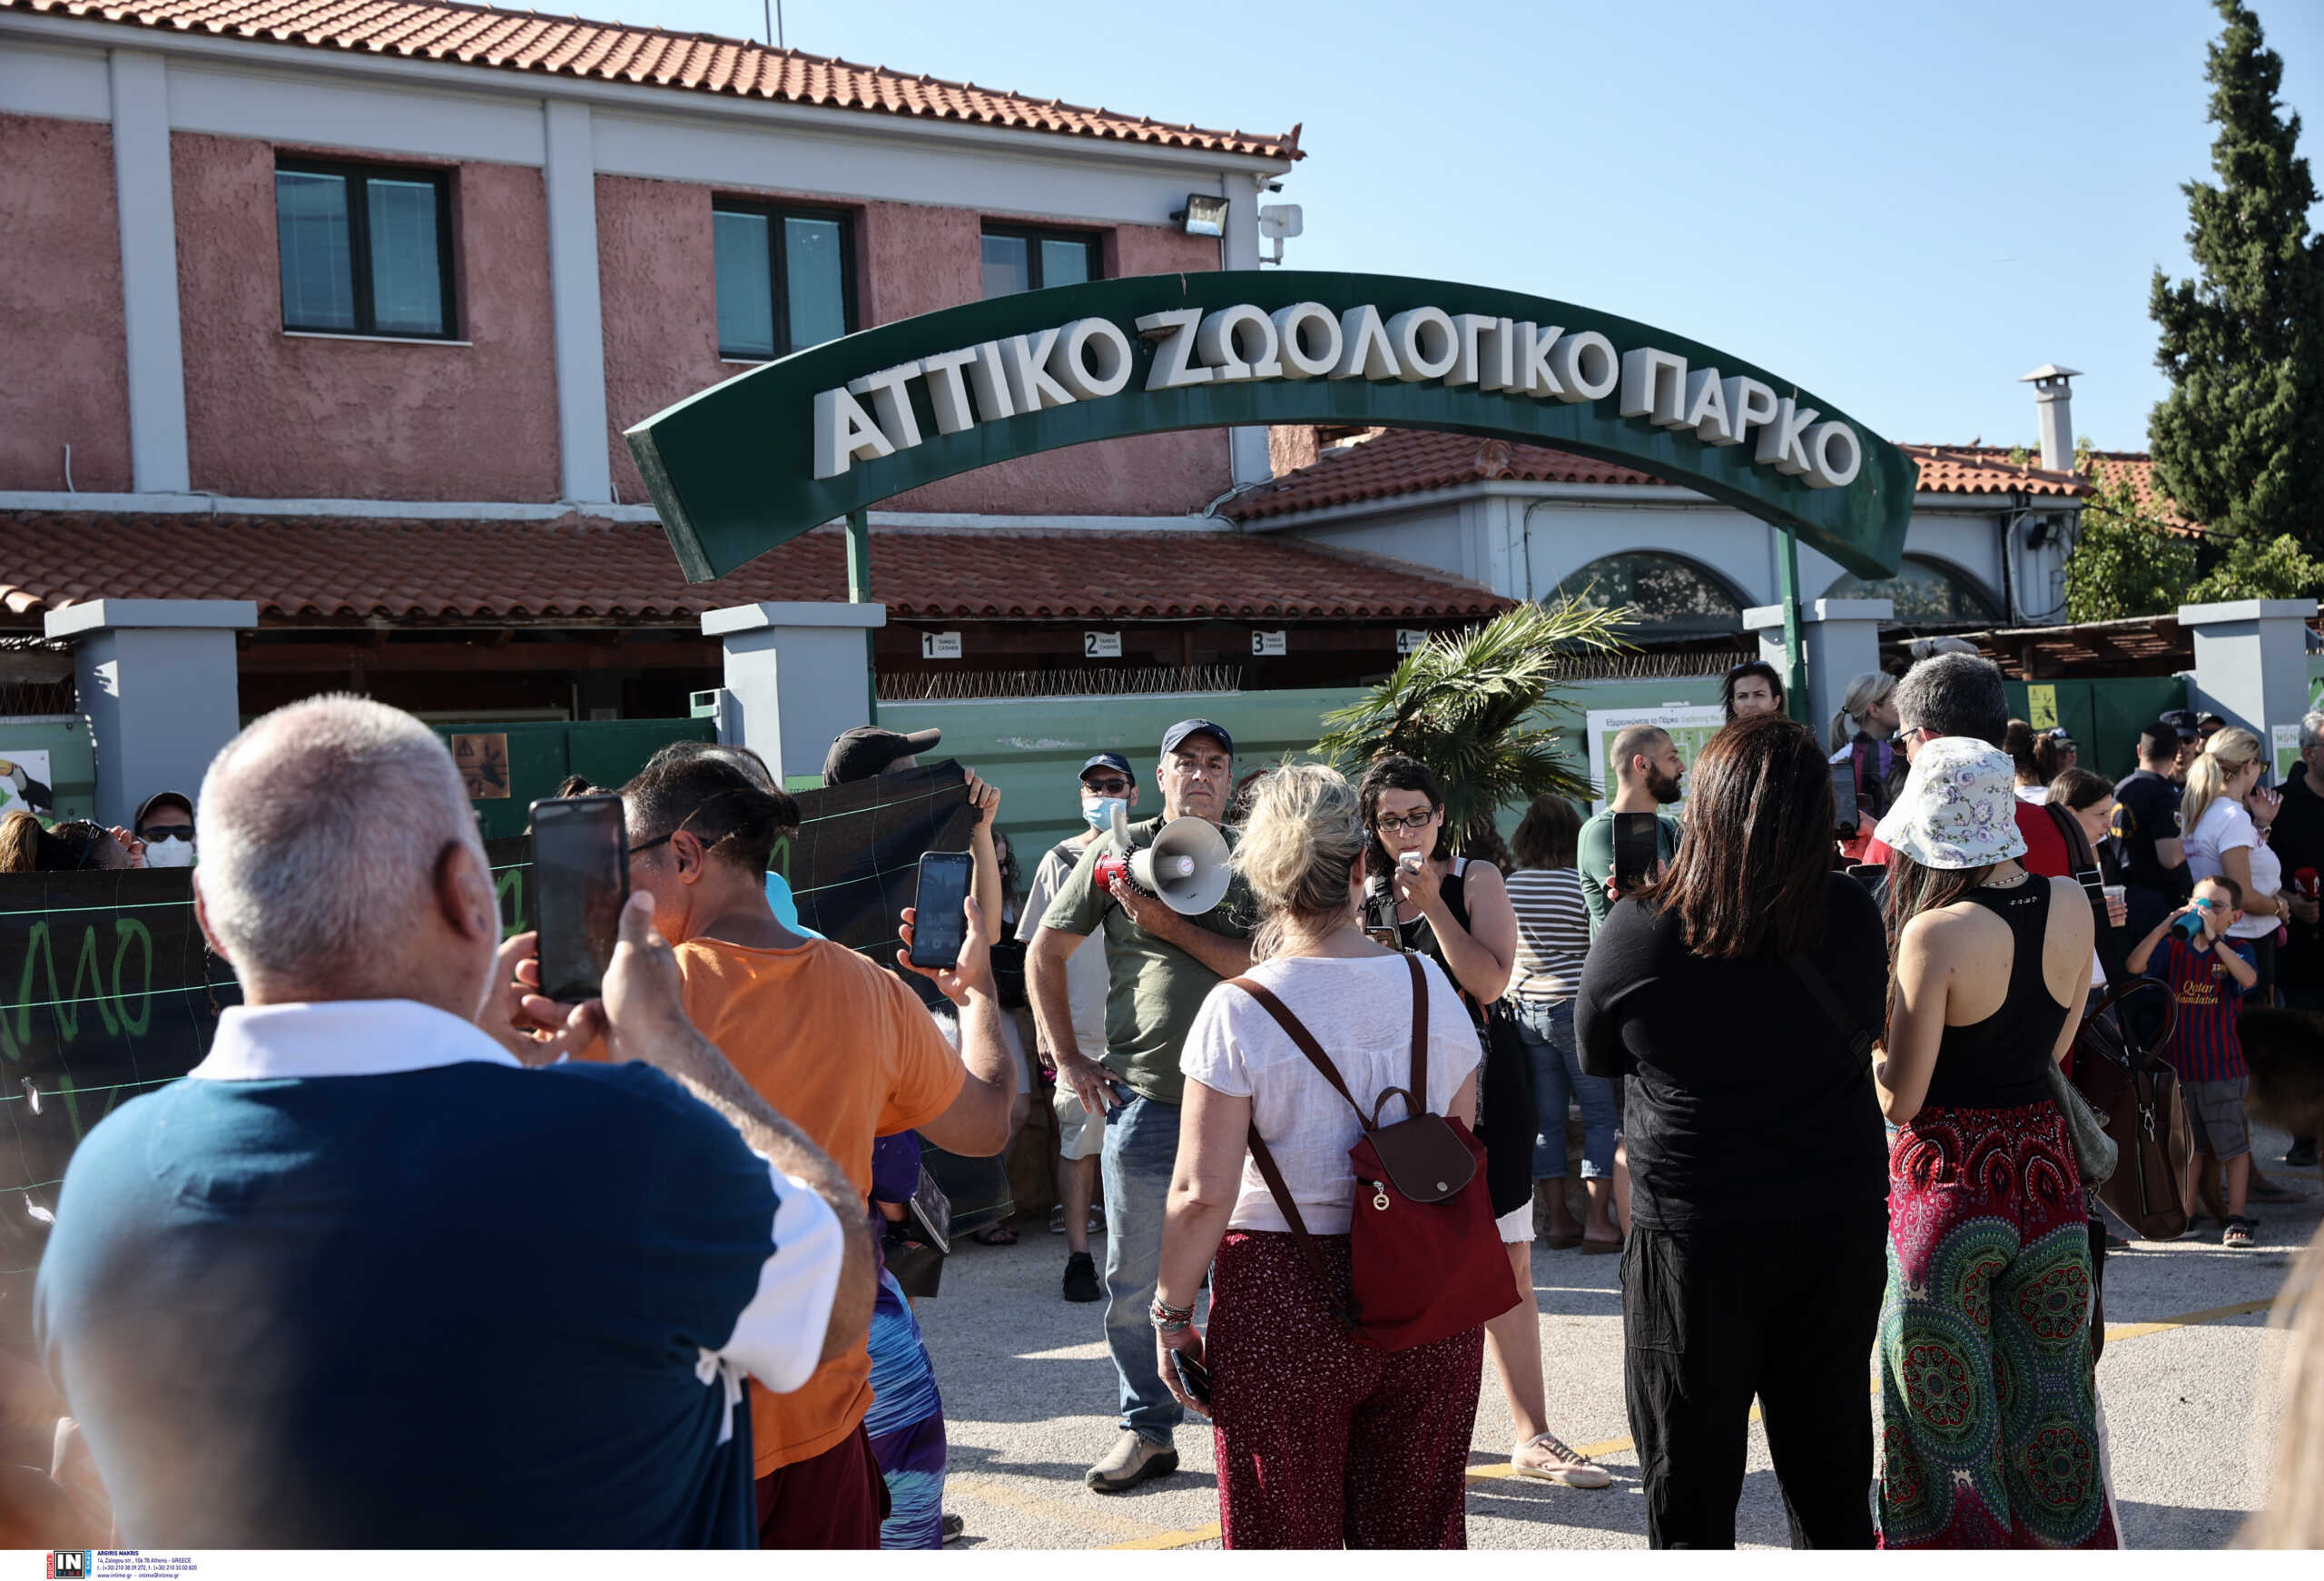 Αττικό Ζωολογικό Πάρκο: Βουλευτές του ΣΥΡΙΖΑ ζητούν πλήρη έλεγχο των εγκαταστάσεων του